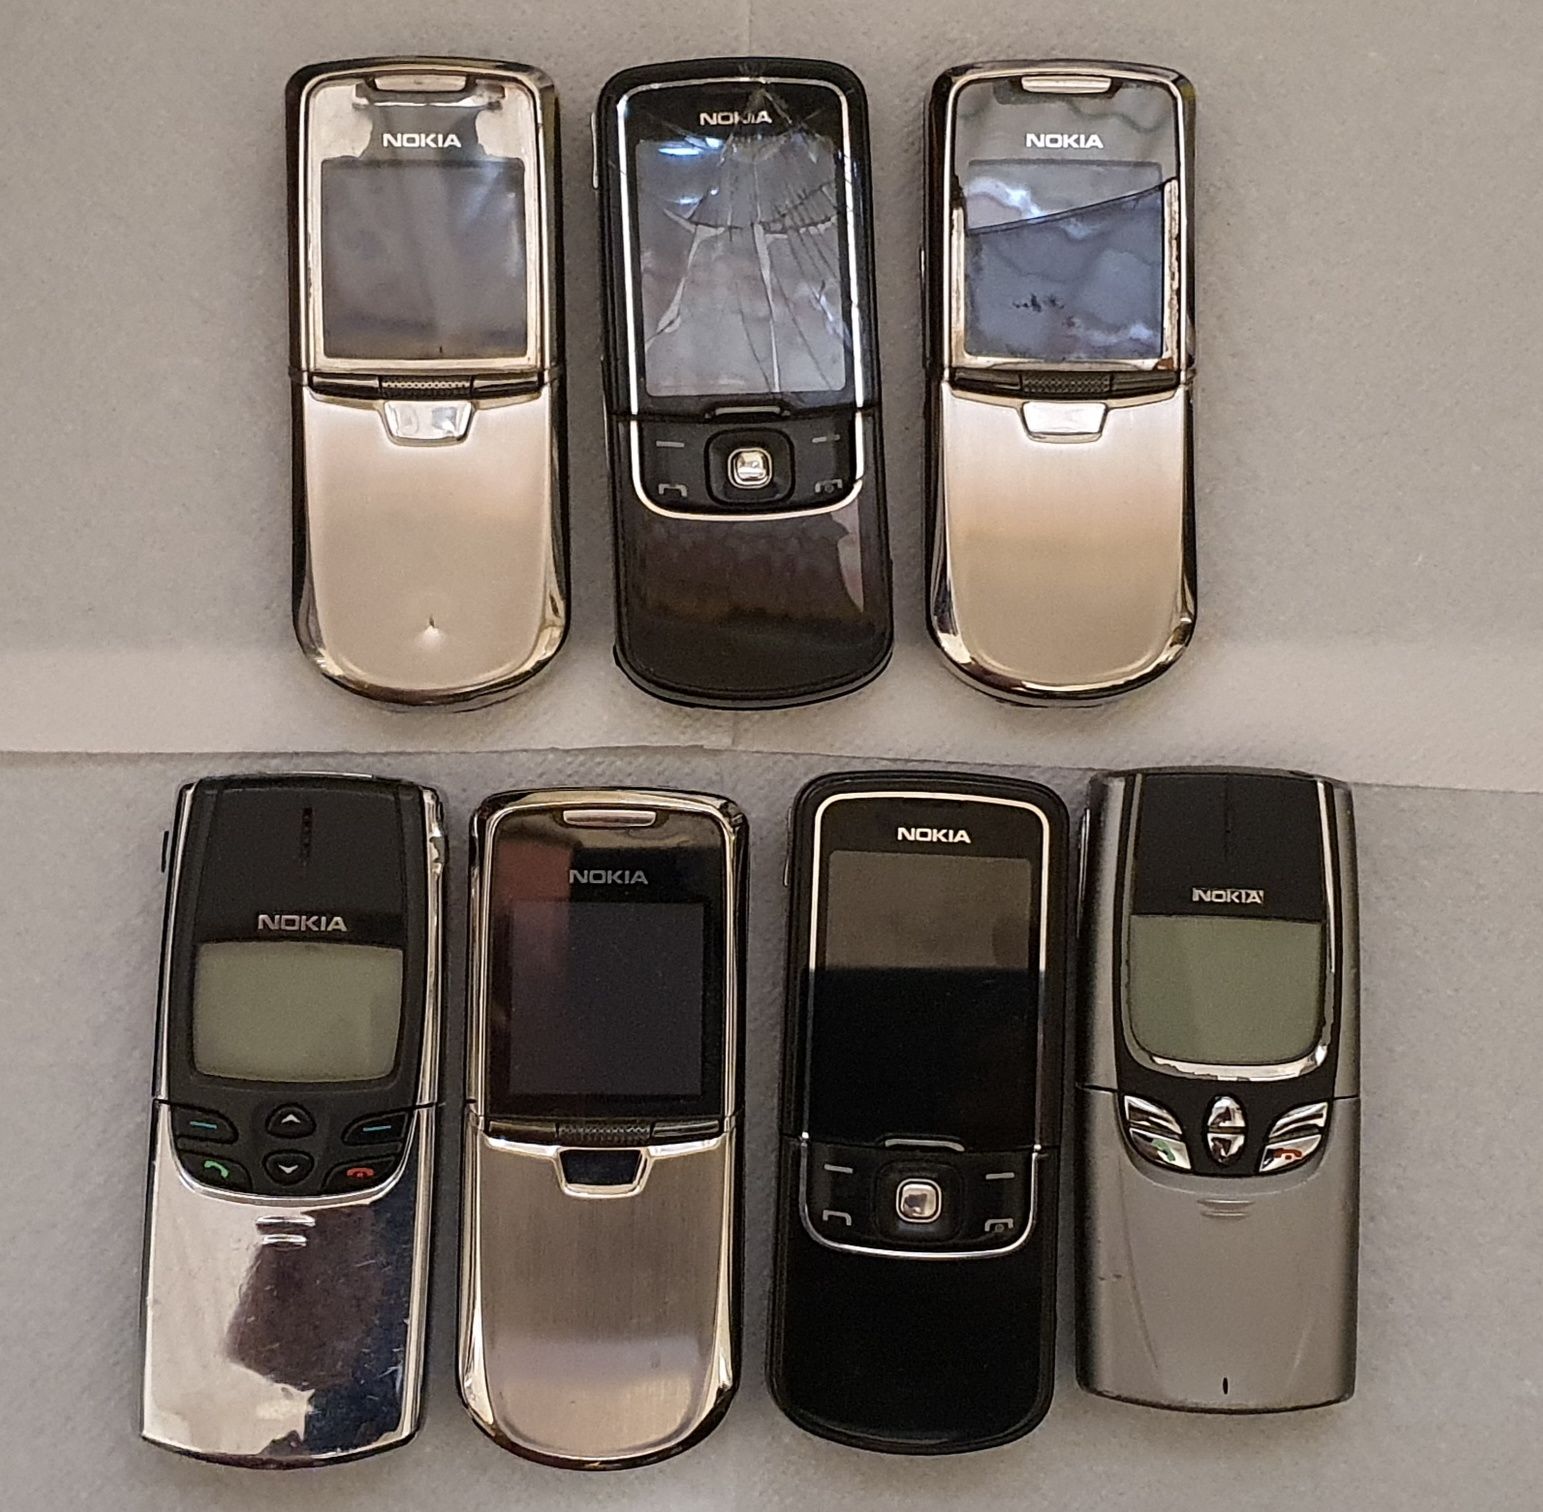 Nokia 8800, 8600, 8810, 8850 si multe alte modele